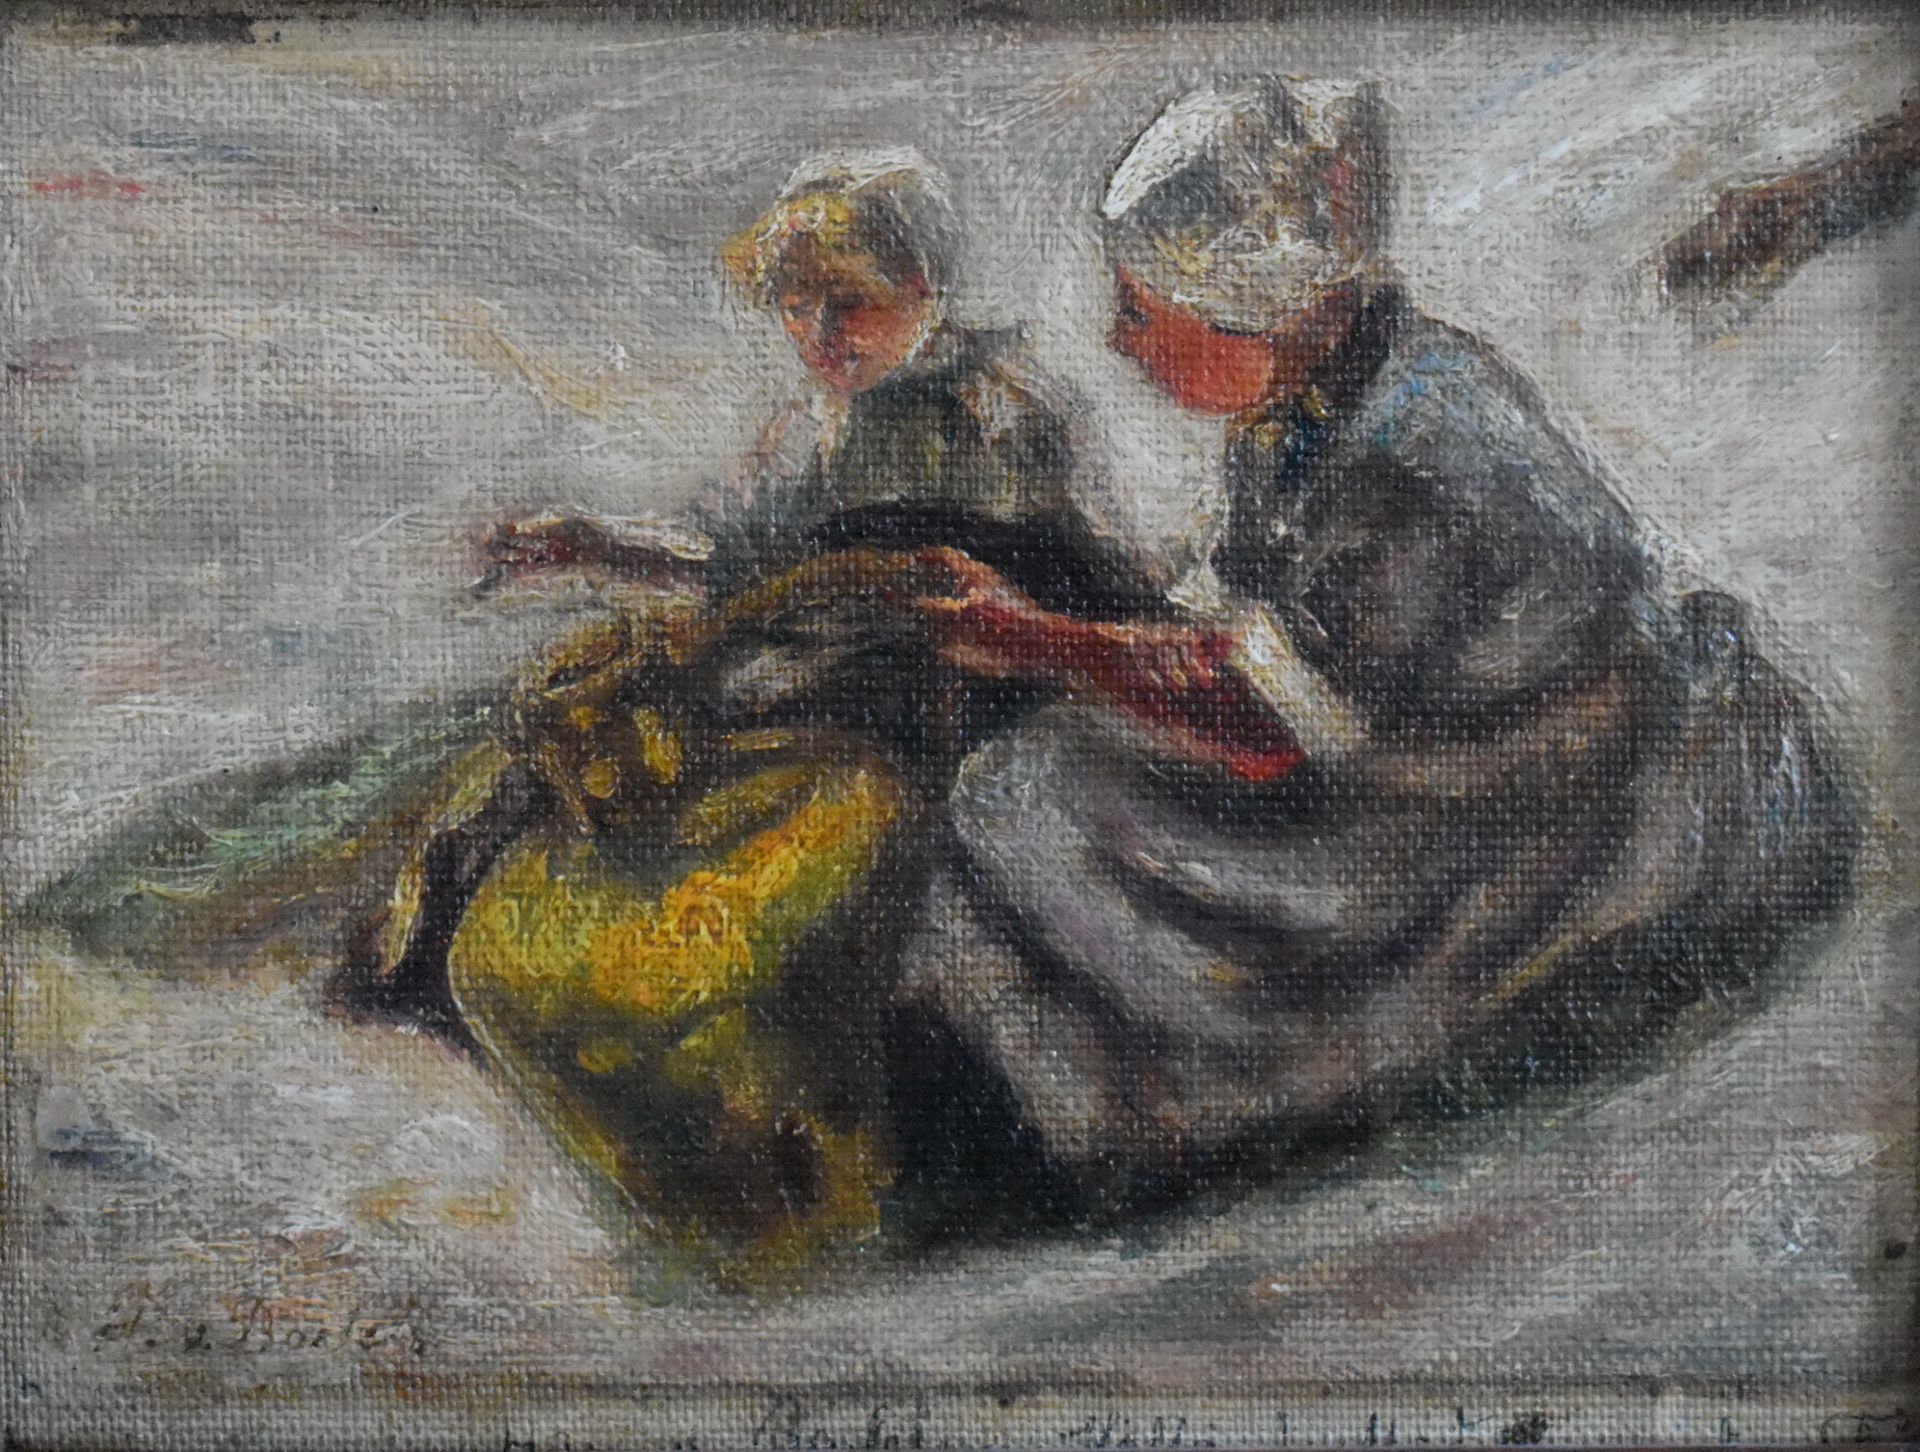 Bartels, Hans von (1856 - 1913), "Zwei holländische Fischerfrauen am Strand"